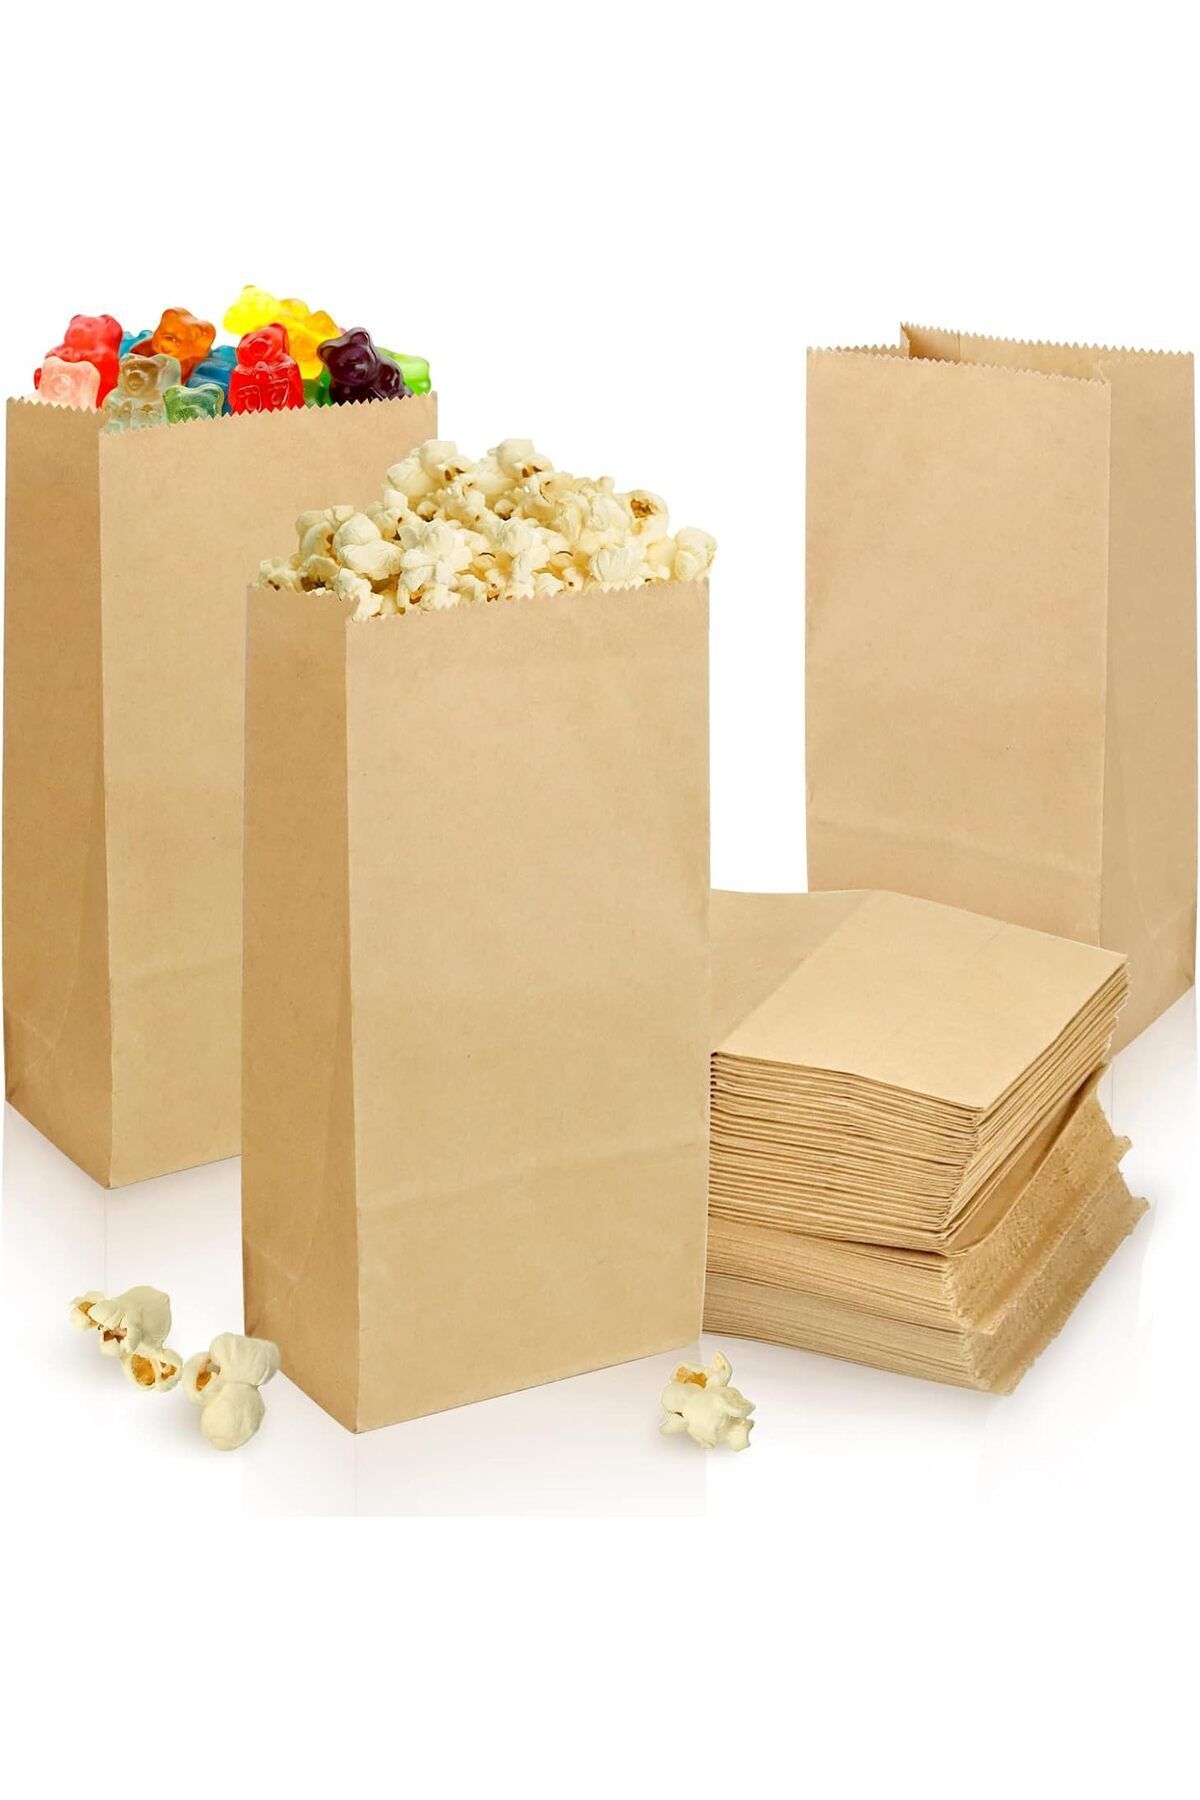 Dekals 50 Adet Dik Duran Patlamış Mısır Kağıdı Popcorn Kutusu ( Mısır, Cips, Çerez, Aparatif Poşeti )